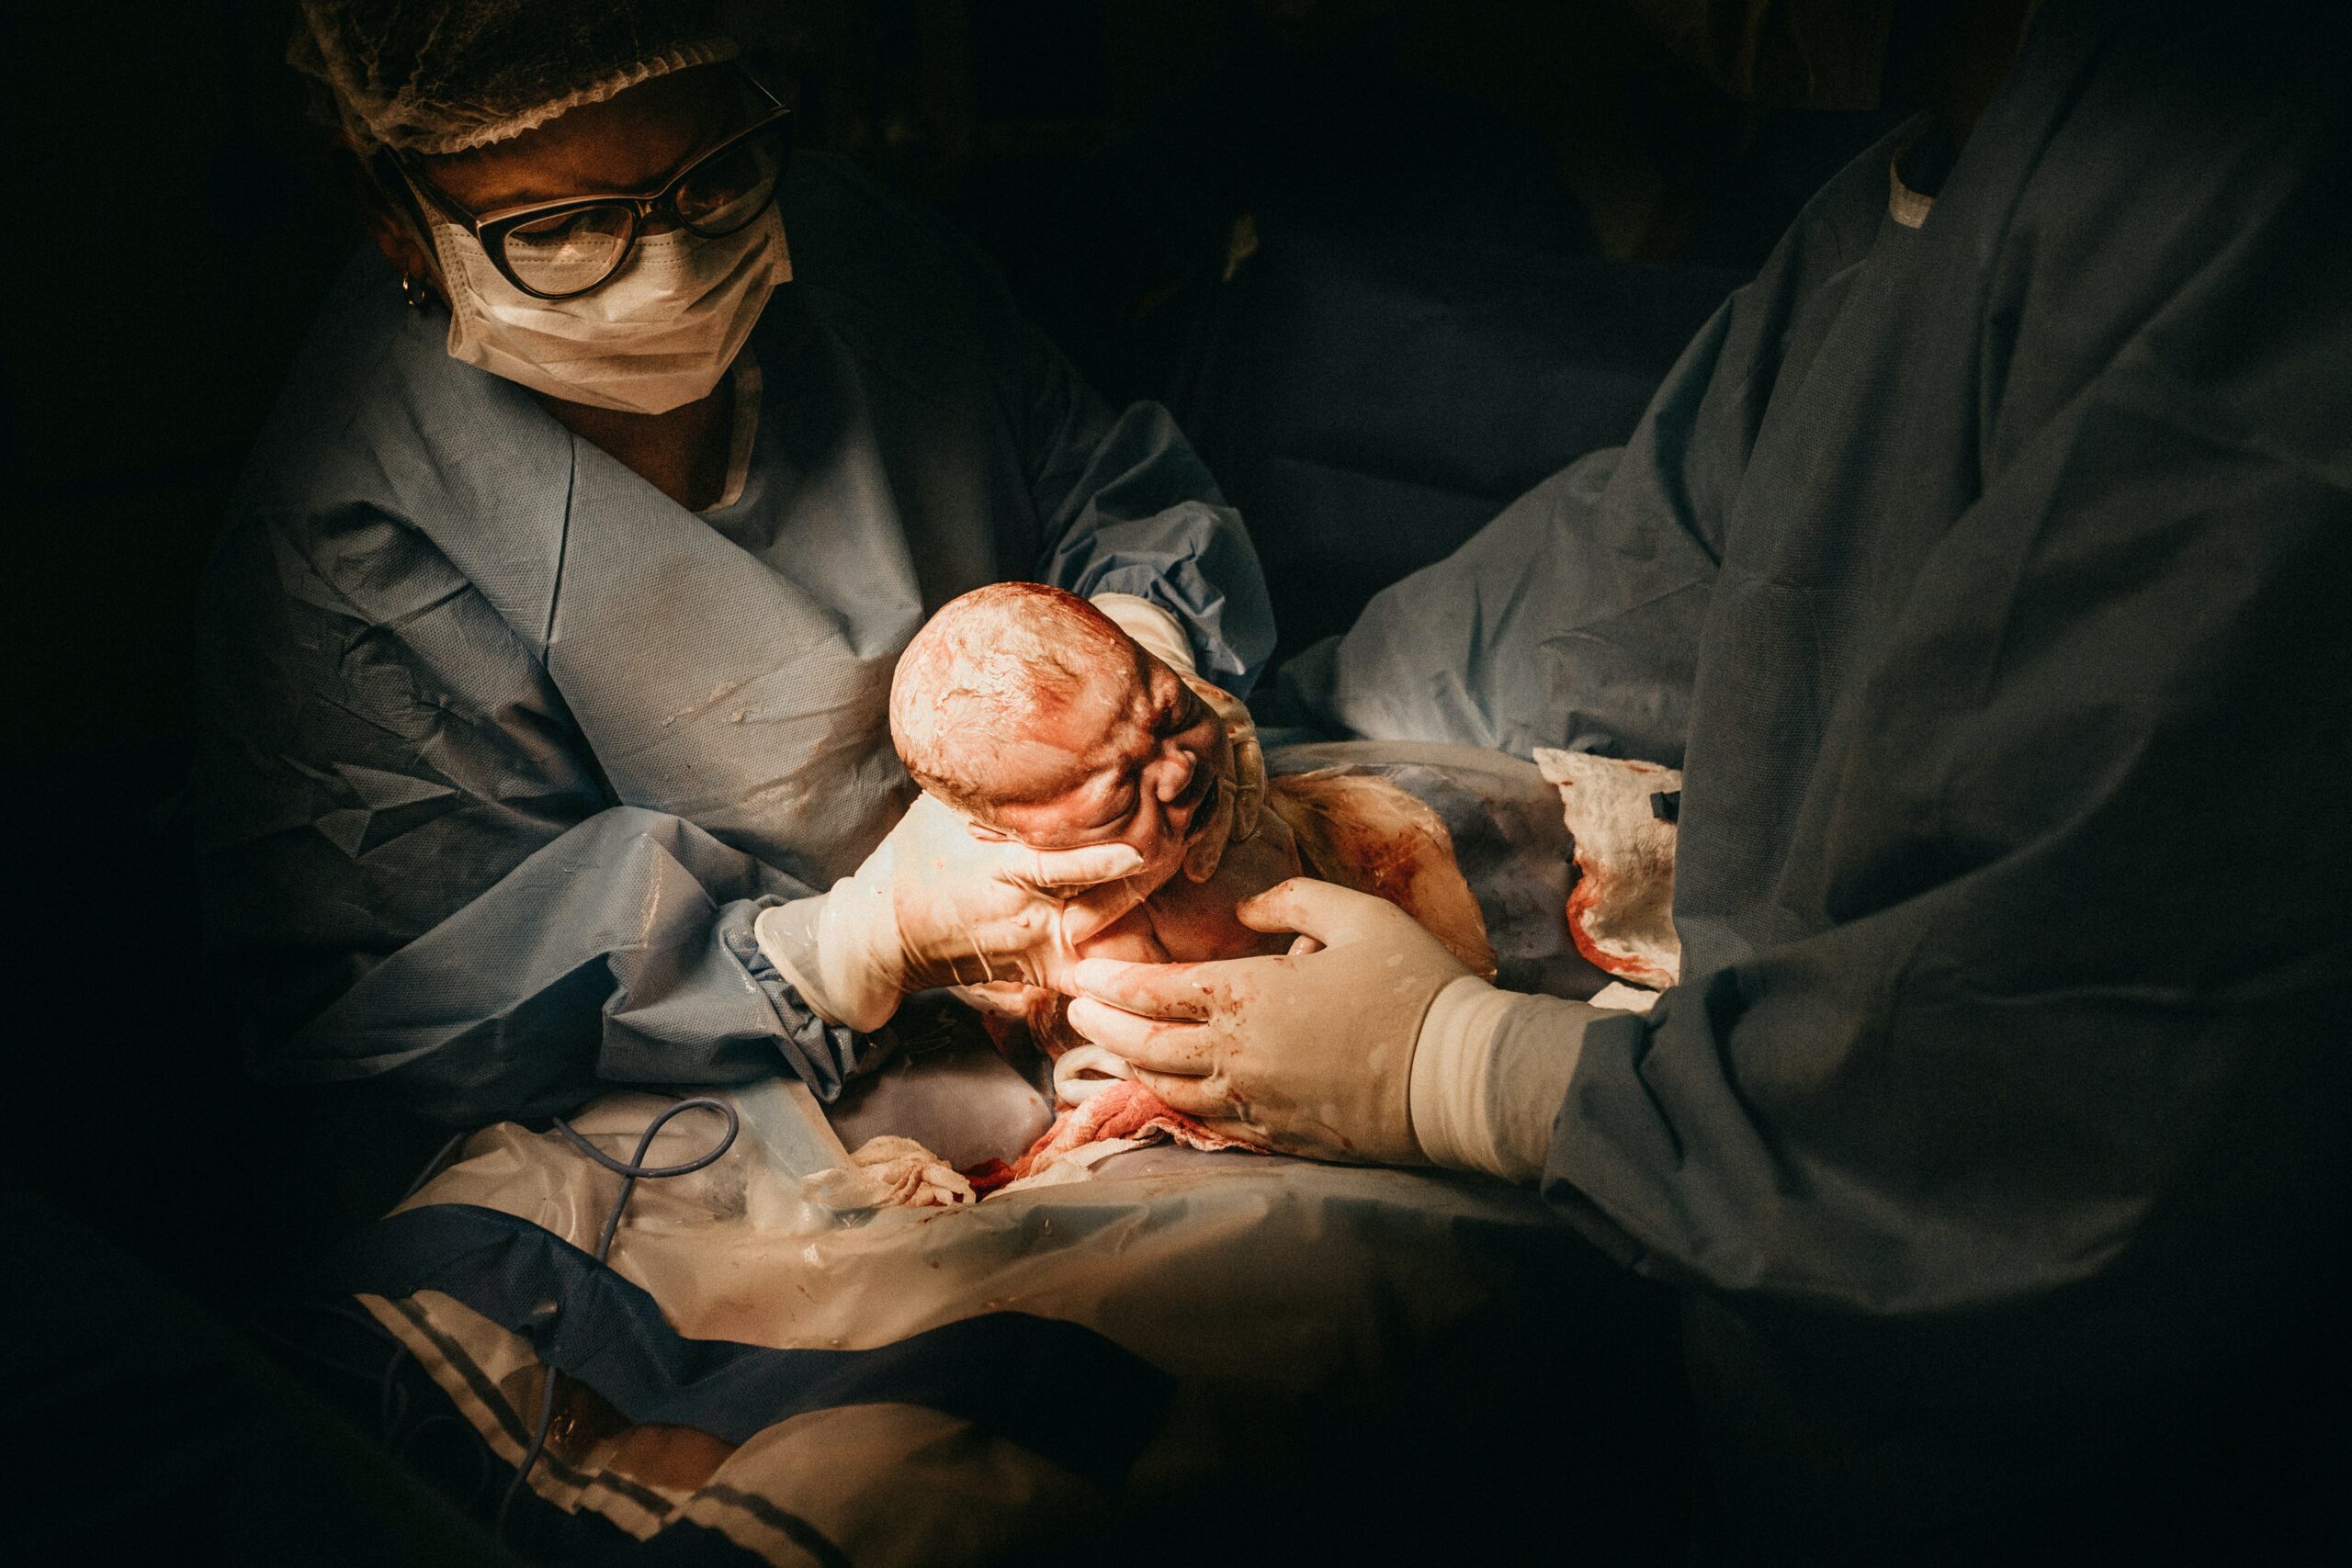 هل يمكن الولادة الطبيعية بعد القيصرية؟| شروط تسهيل الولادة الطبيعية بعد القيصرية